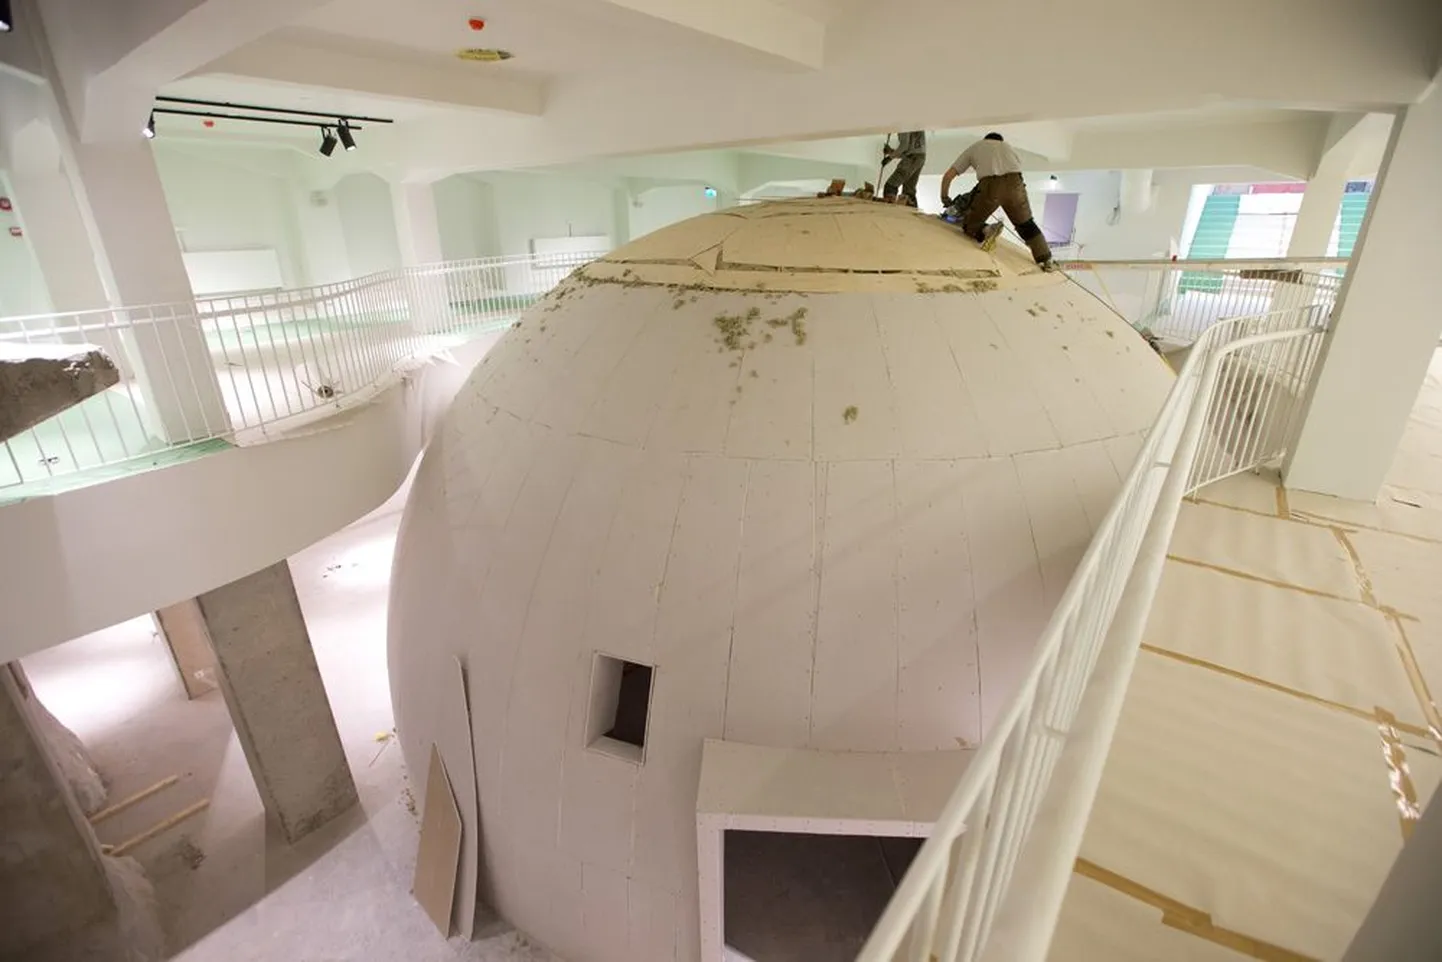 Renoveeritava keskuse üheks suuremaks uuenduseks on läbi kahe korruse ulatuv planetaarium.